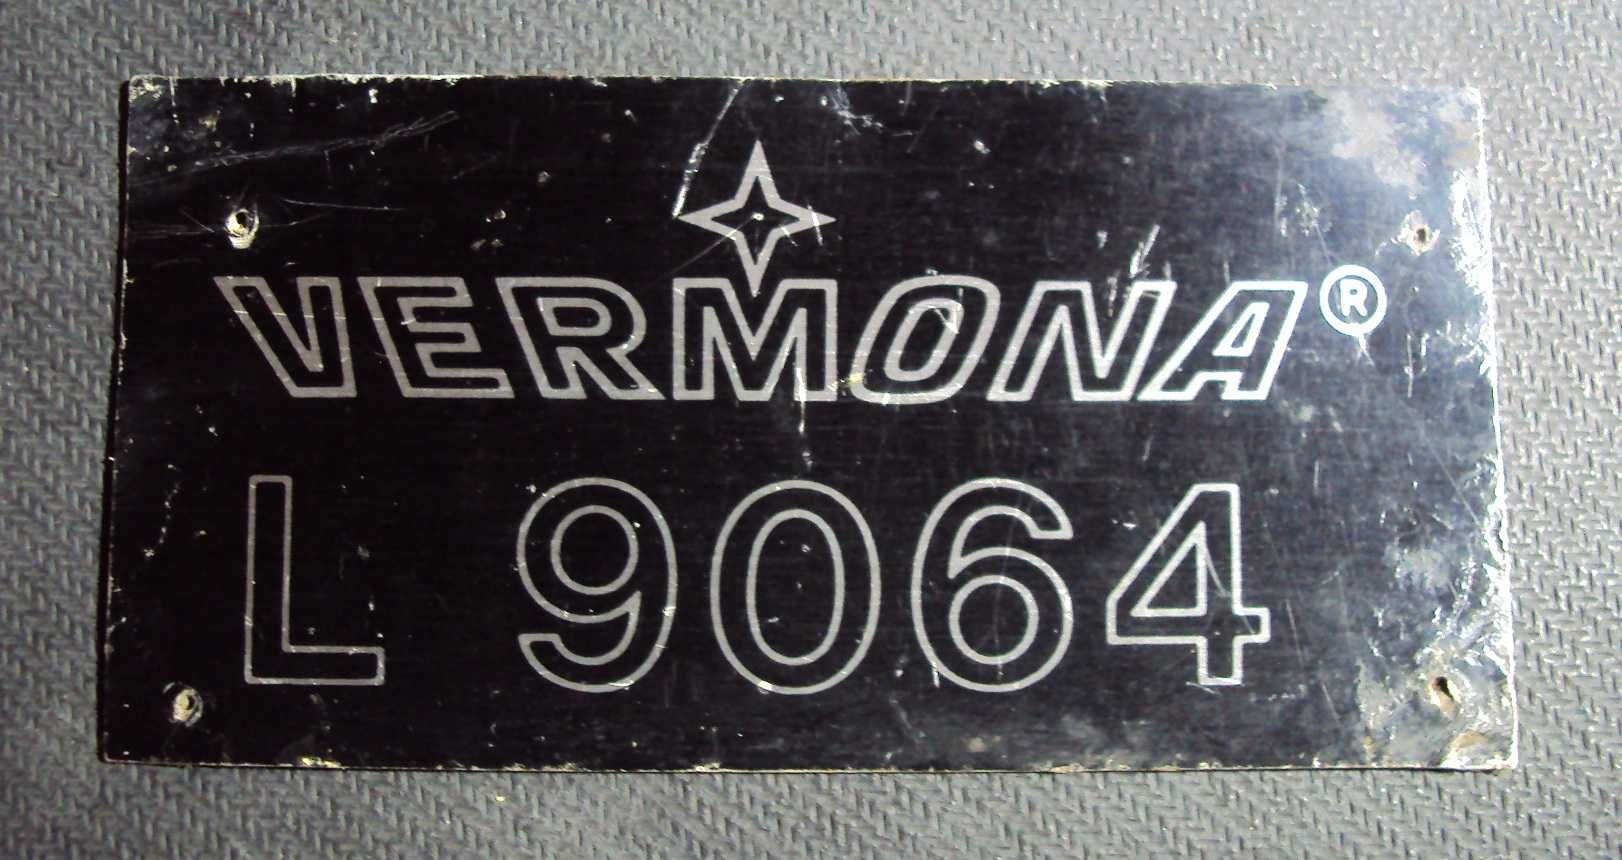 шильдик VERMONA  L9064